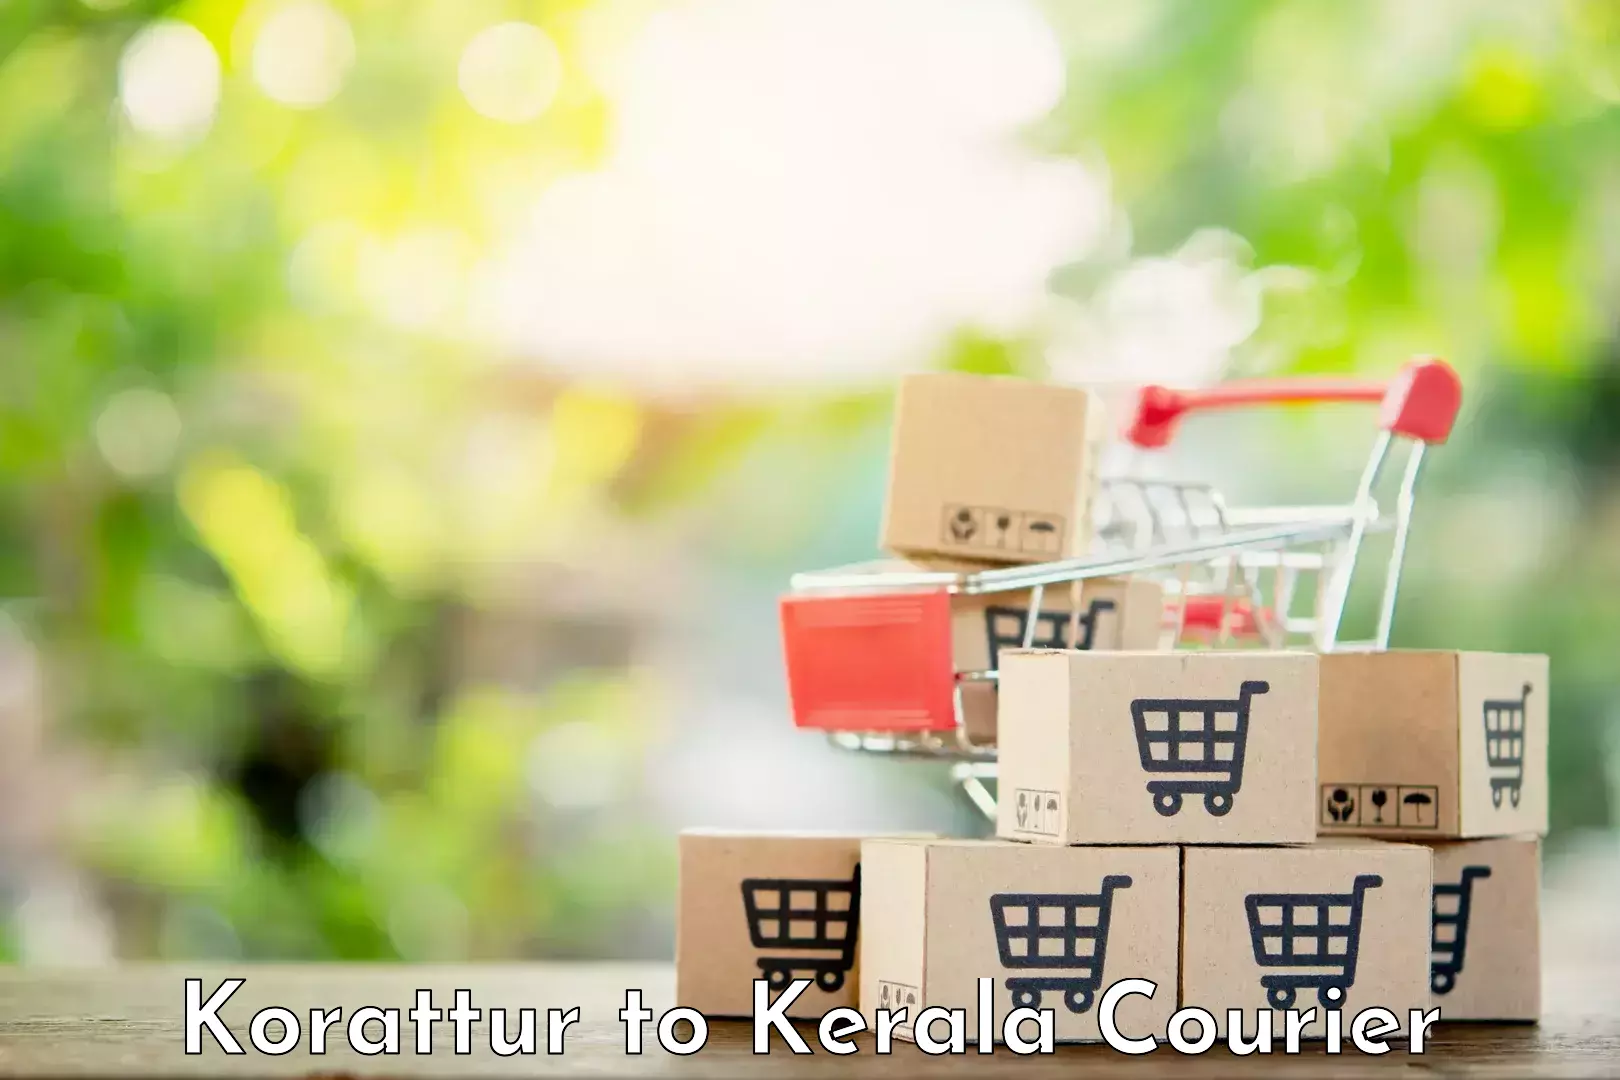 Smart courier technologies Korattur to Palakkad